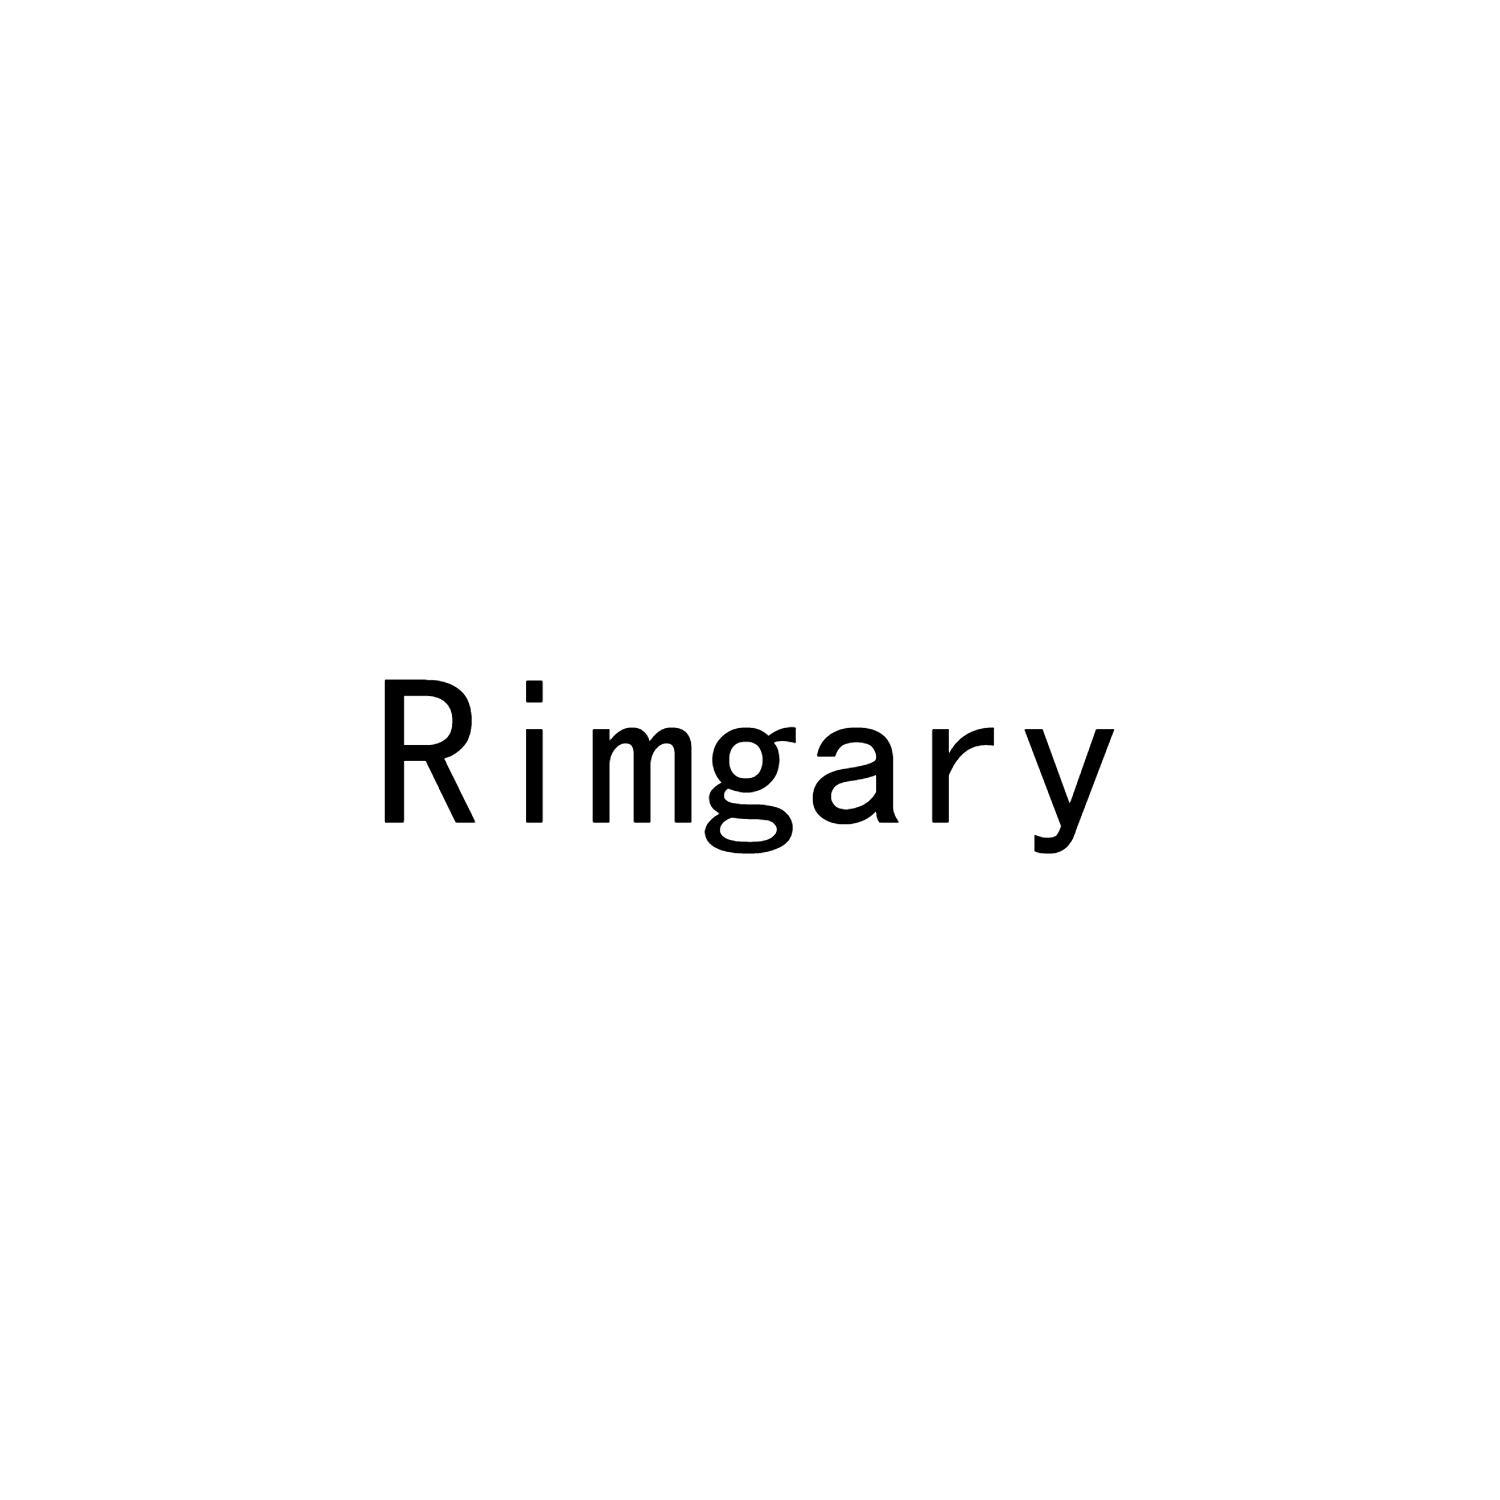 RIMGARY